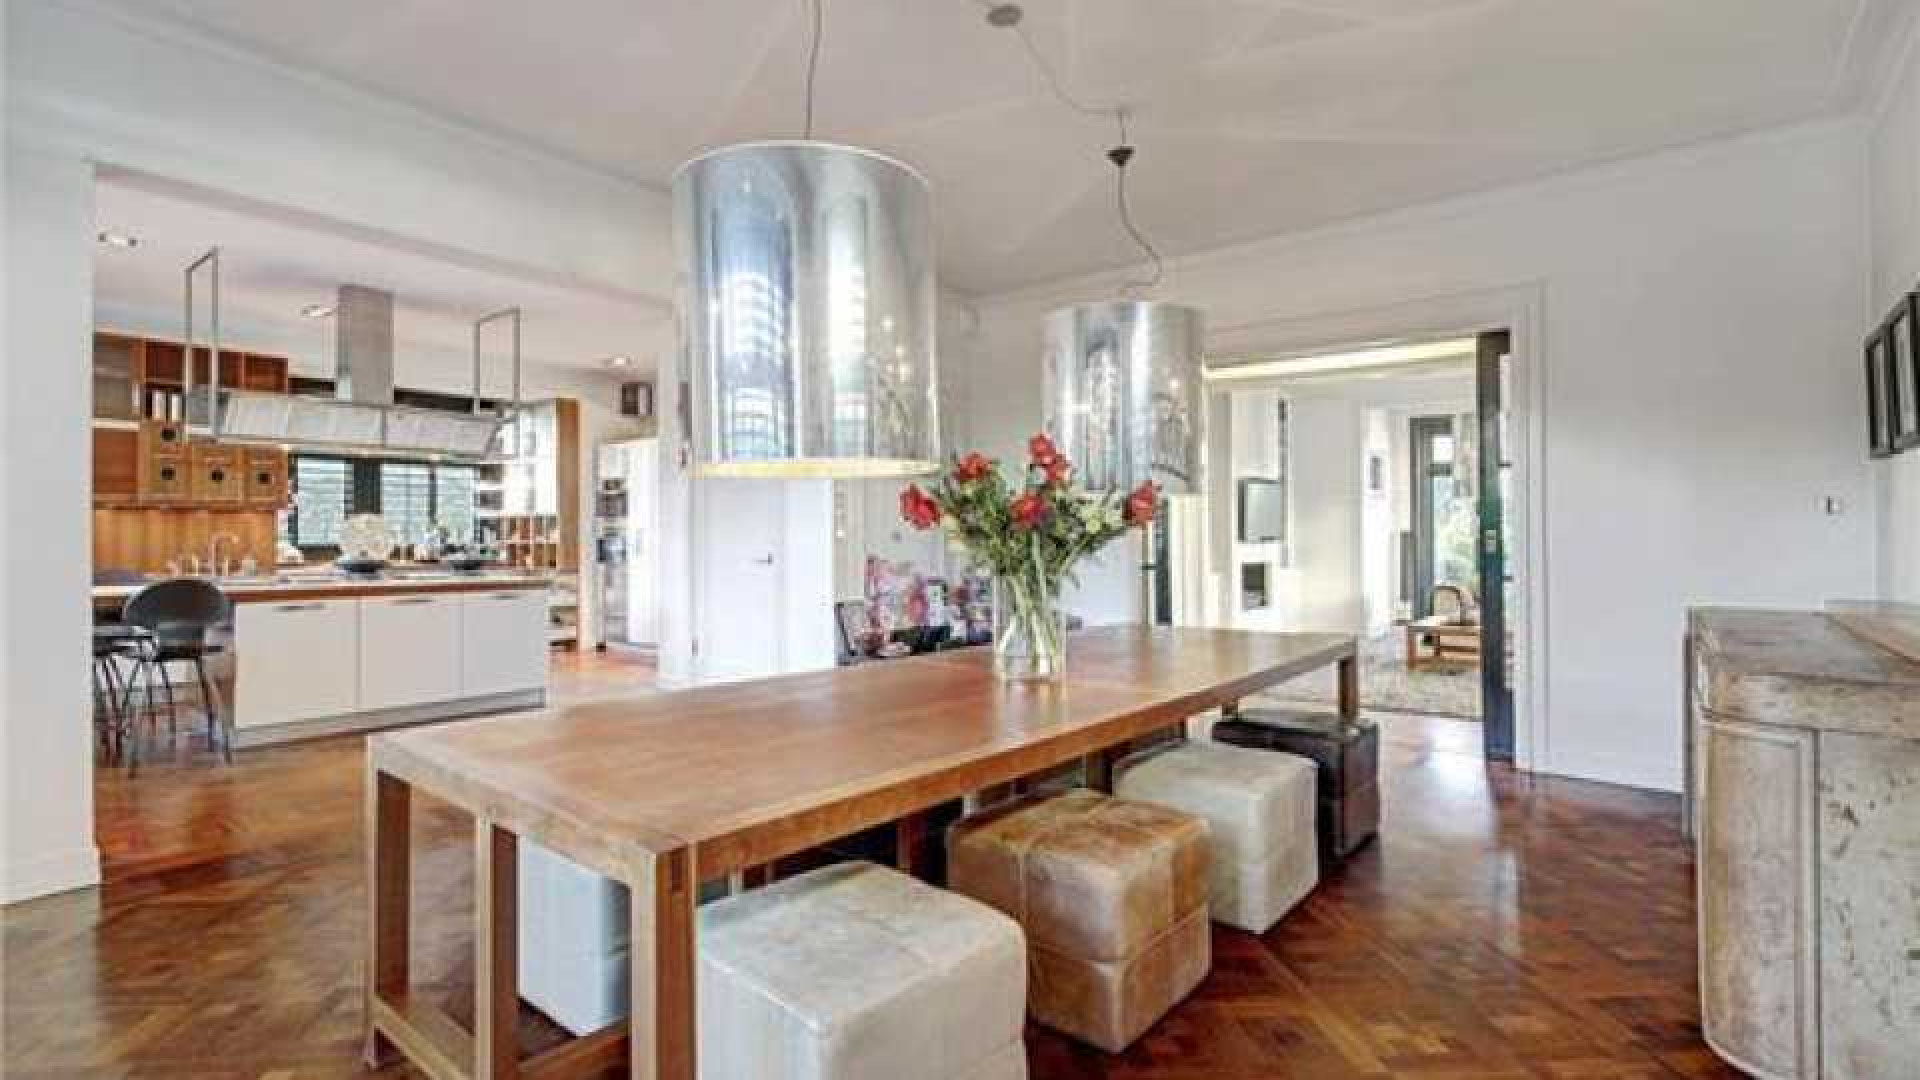 Frank Rijkaard koopt miljoenen villa in Amsterdam Zuid. Zie foto's